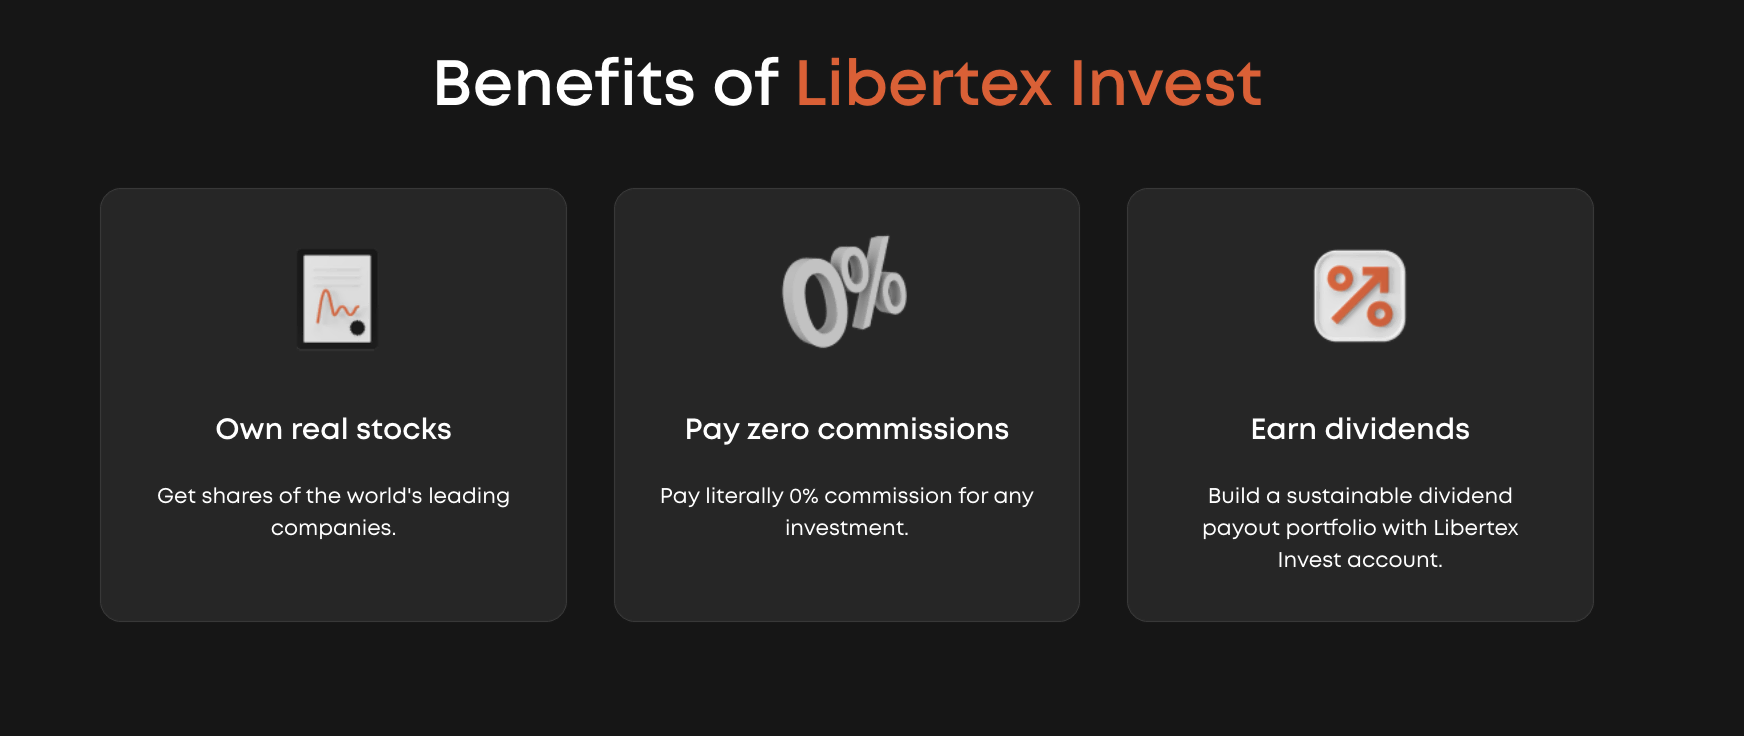 Libertex投资的优势